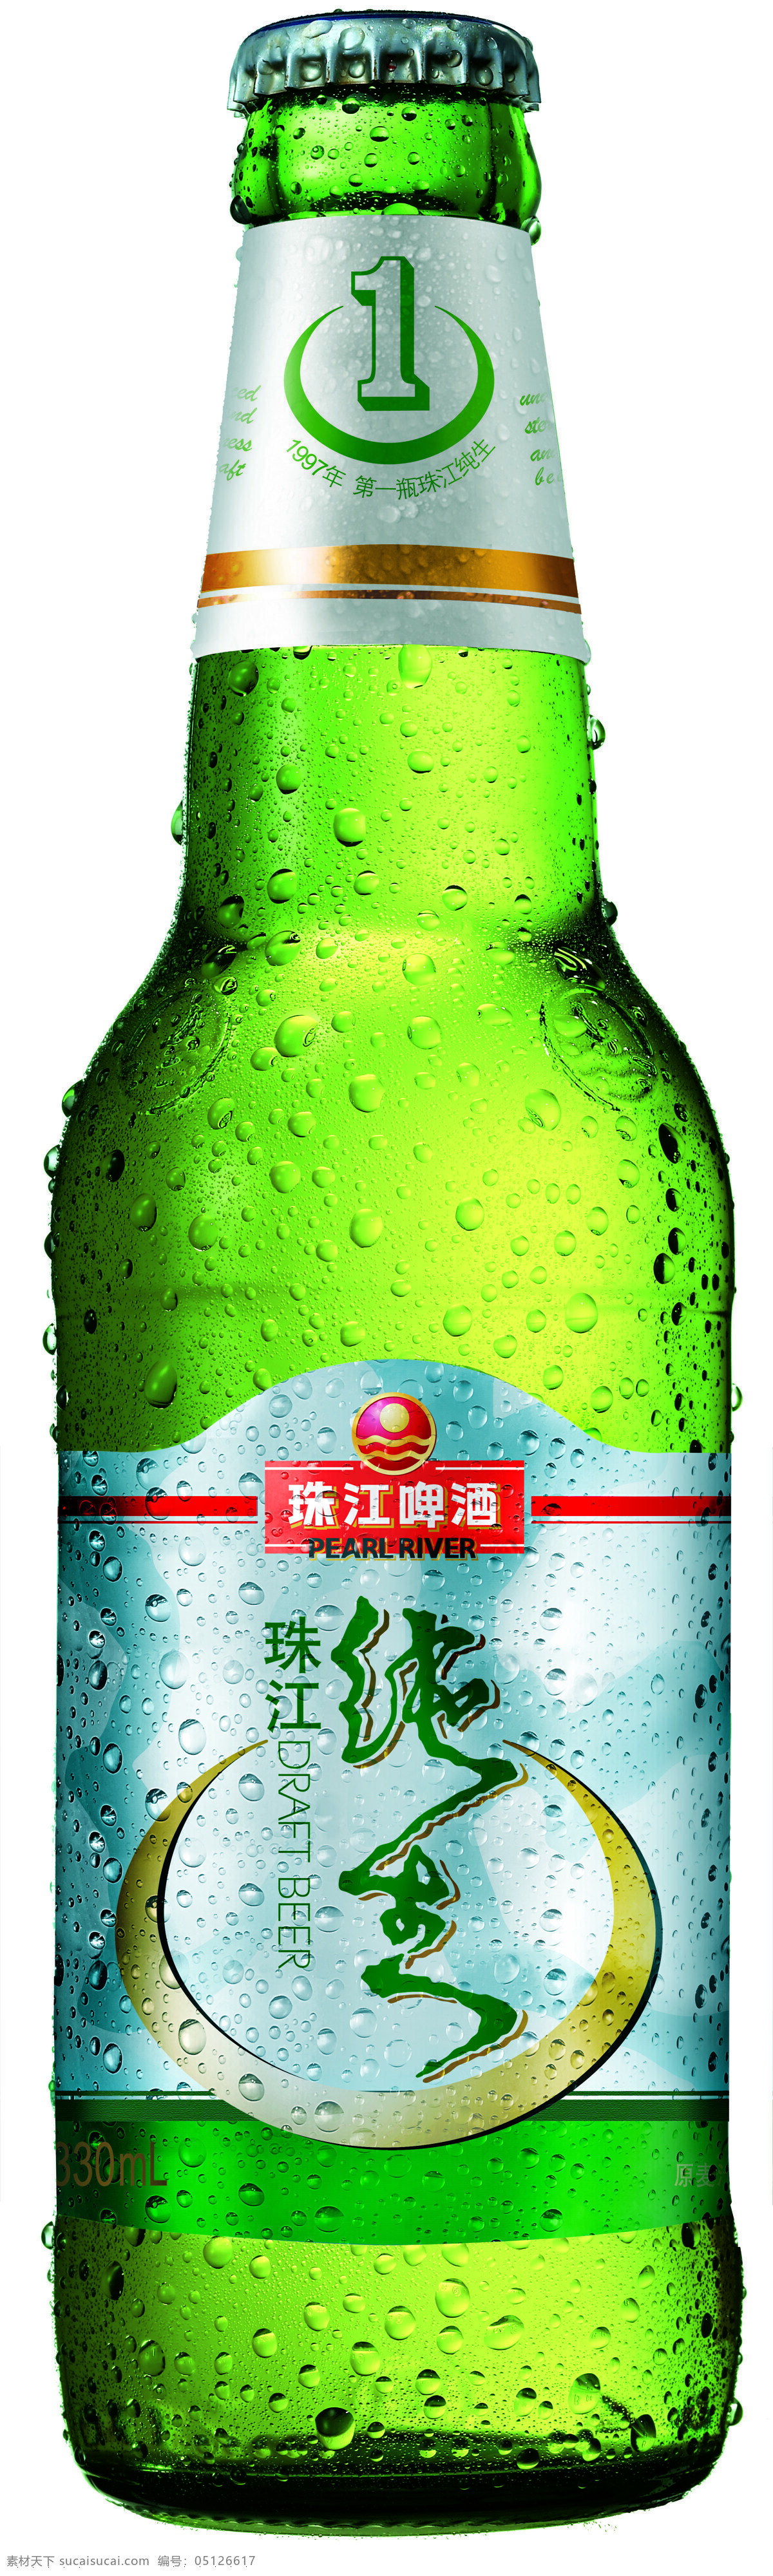 纯生啤酒瓶 珠江 纯生 啤酒 瓶